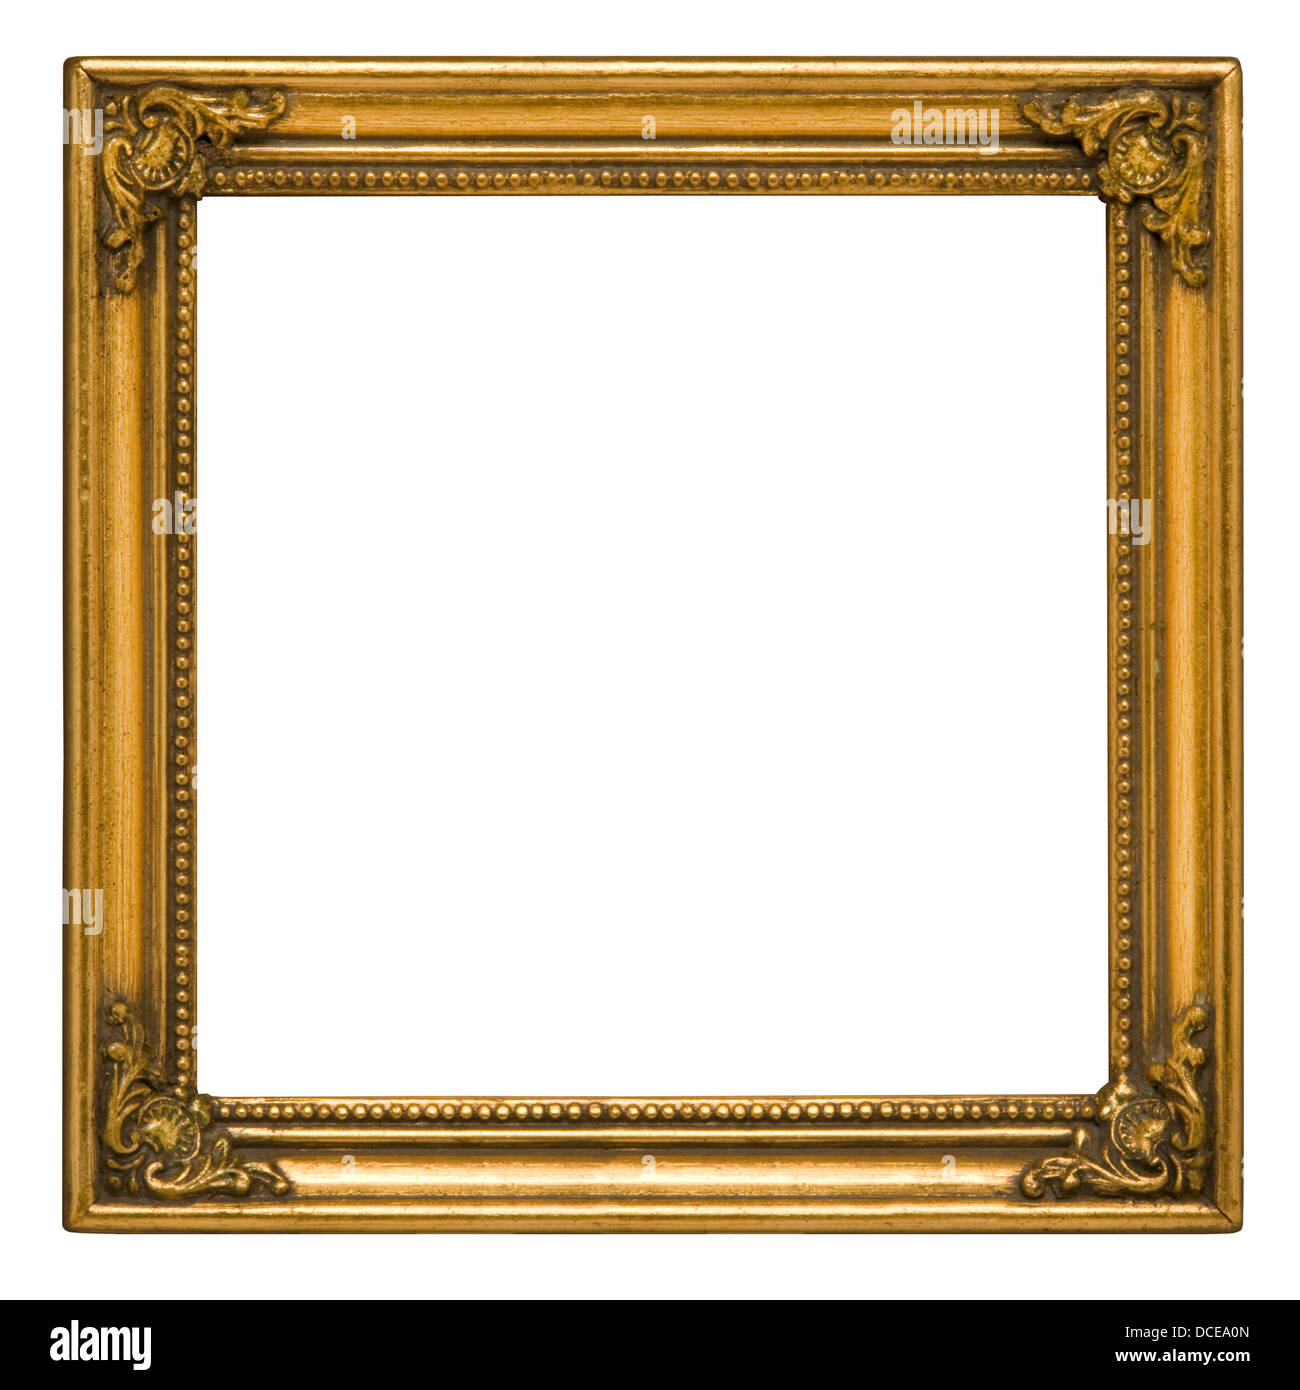 Cadre photo carré d''or peint against white background Banque D'Images